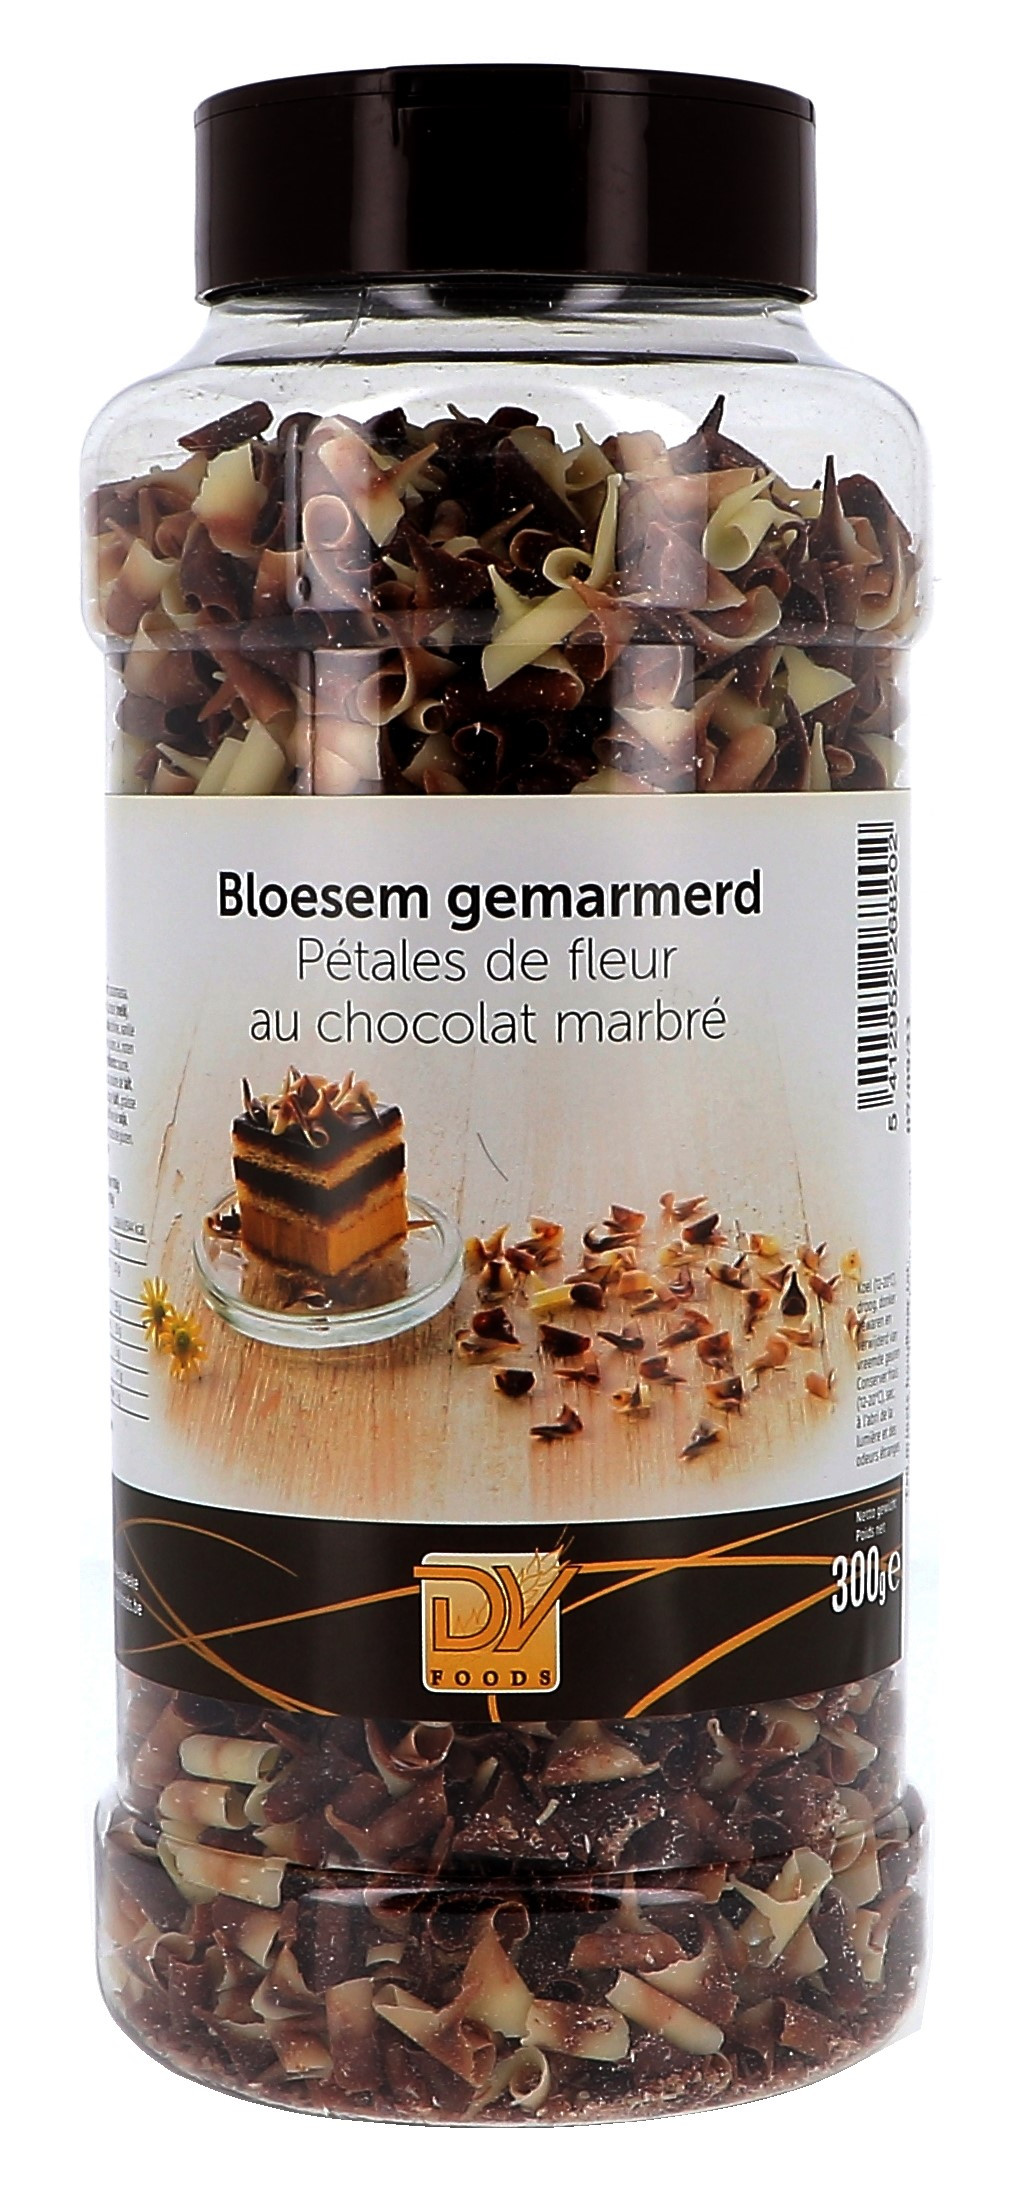 Belastingbetaler Voorzieningen nationale vlag Chocolade bloesem gemarmerd 300gr DV Foods Online Decoratie Kopen - Nevejan